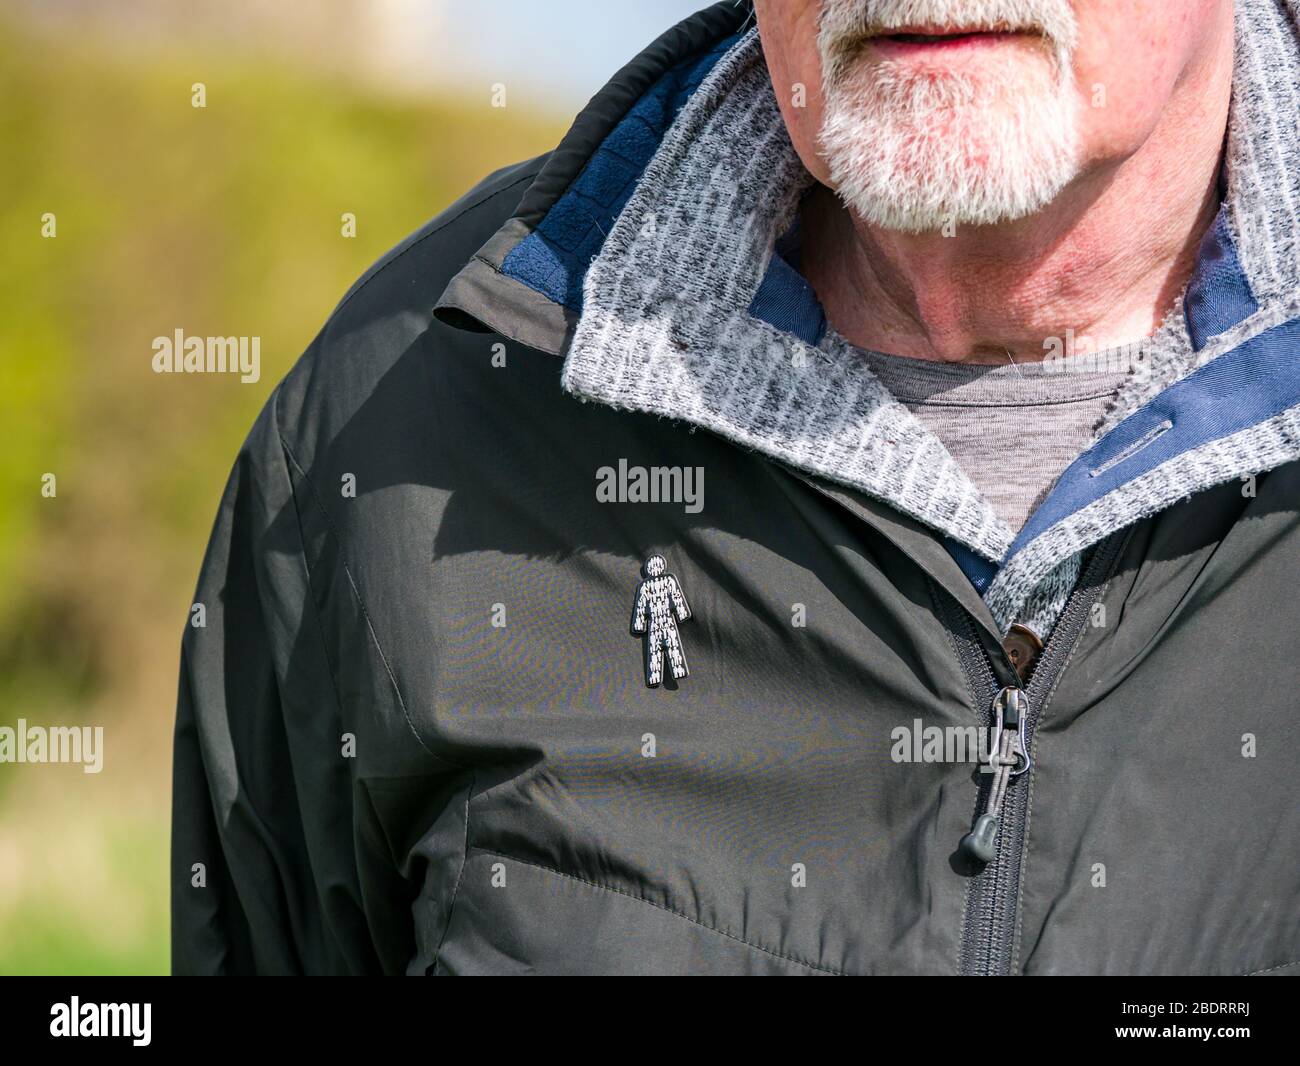 Uomo anziano con barba grigia che indossa il distintivo di beneficenza Prostate Cancer UK pin fissato alla giacca per aumentare la consapevolezza della condizione di salute comune, Regno Unito Foto Stock